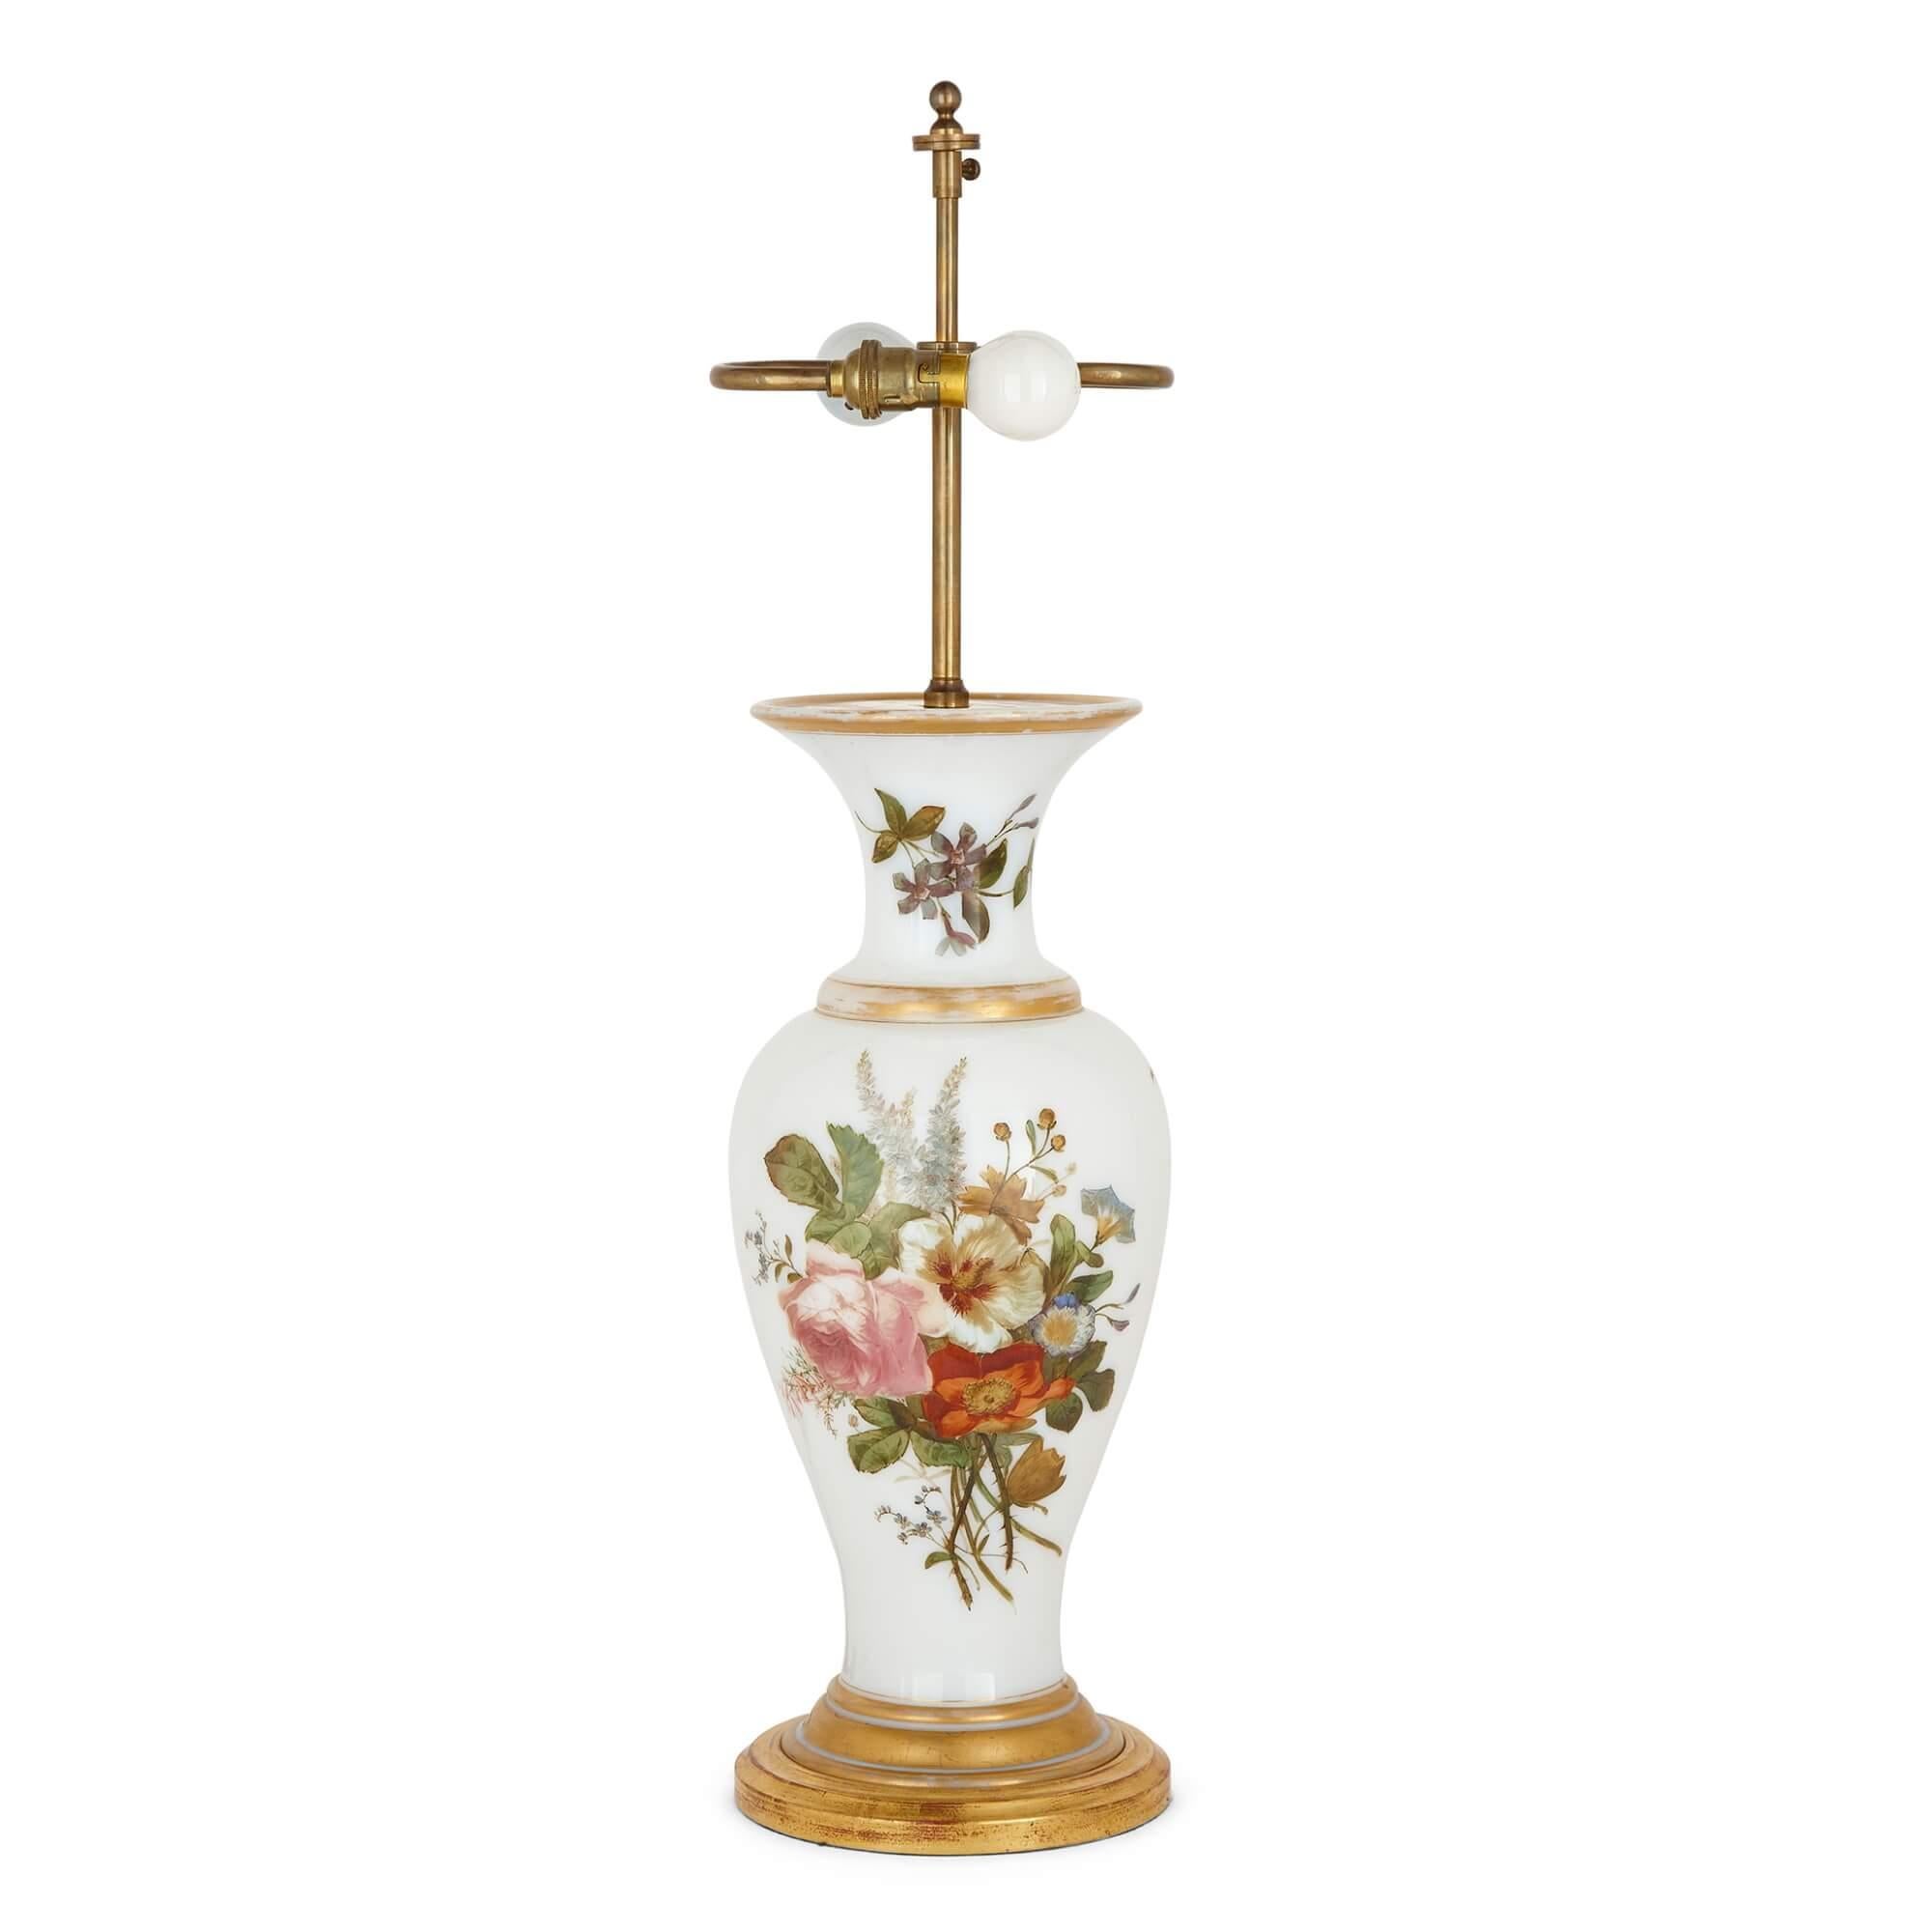 Una lámpara de cristal opalino de Baccarat, en forma de jarrón con decoración floral
Francés, siglo XIX
Medidas: Lámpara: altura 74 cm, diámetro 19 cm
Pantalla: altura 27 cm, diámetro 47 cm
Altura 44,5 cm (sin incluir el